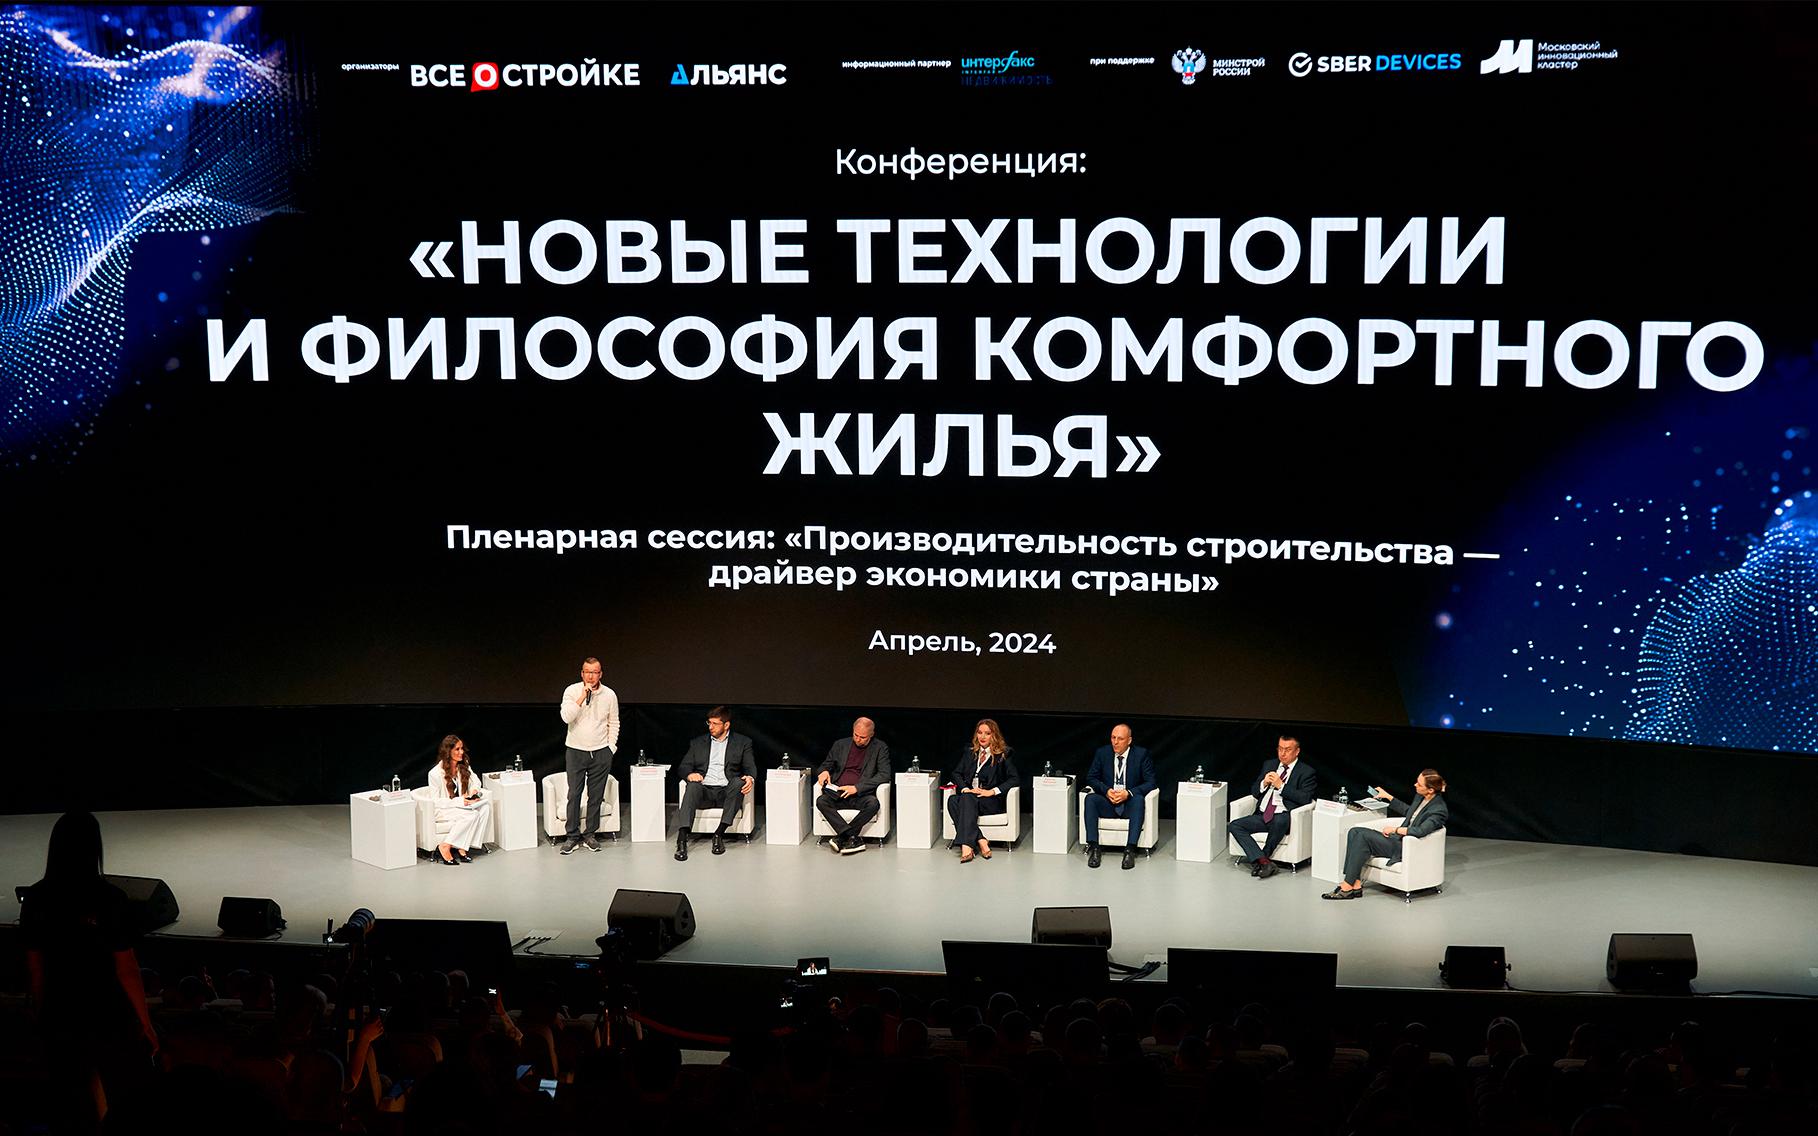 Минстрой рассказал о новой дорожной карте на конференции Всеостройке.рф